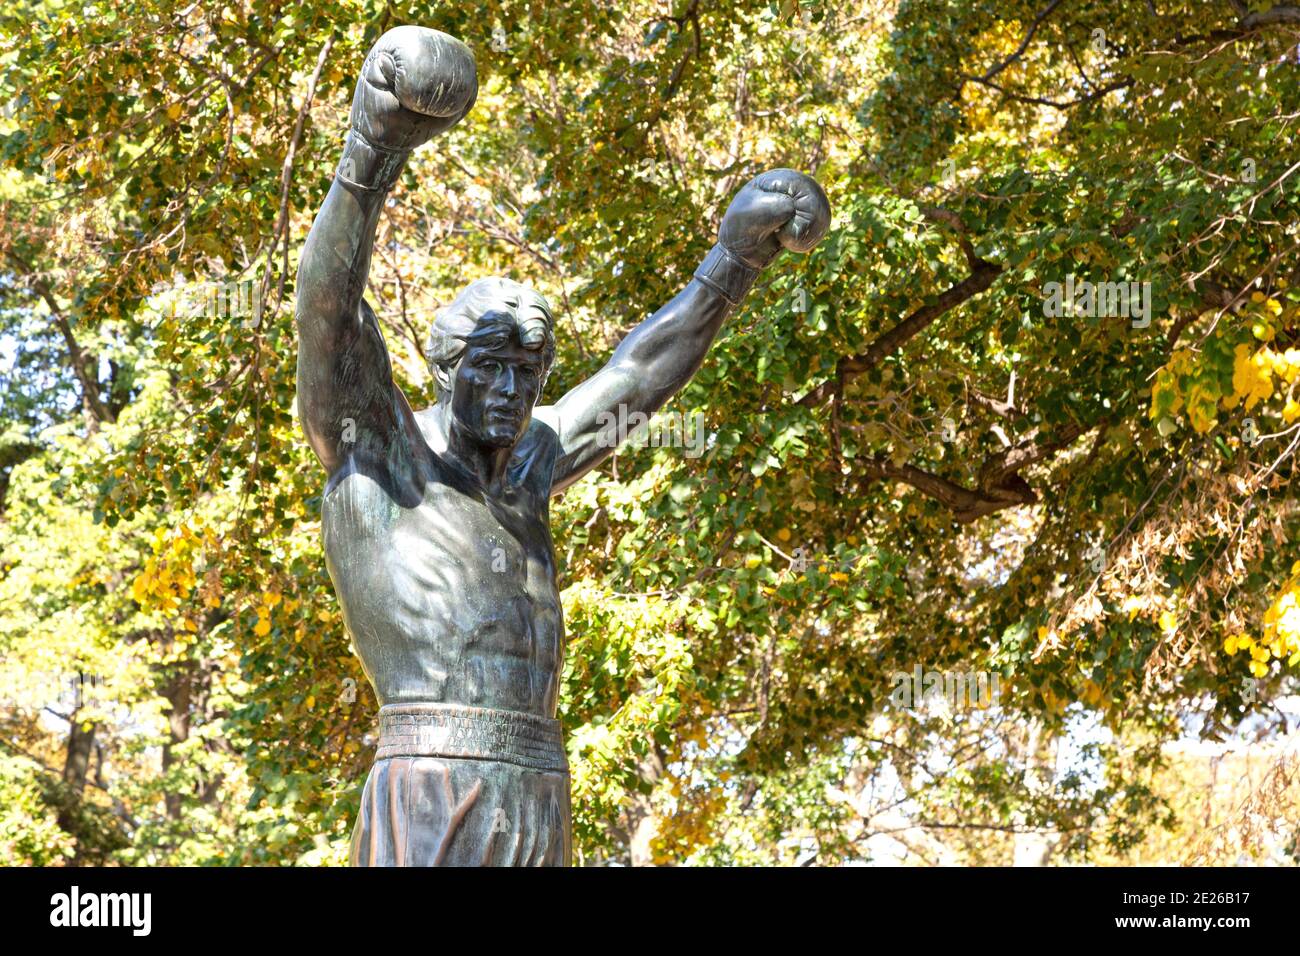 Statue des Rocheuses à Philadelphie, États-Unis. La statue dépeint Rocky Balboa, le champion fictif de poids lourd du monde des films Rocheuses. Banque D'Images